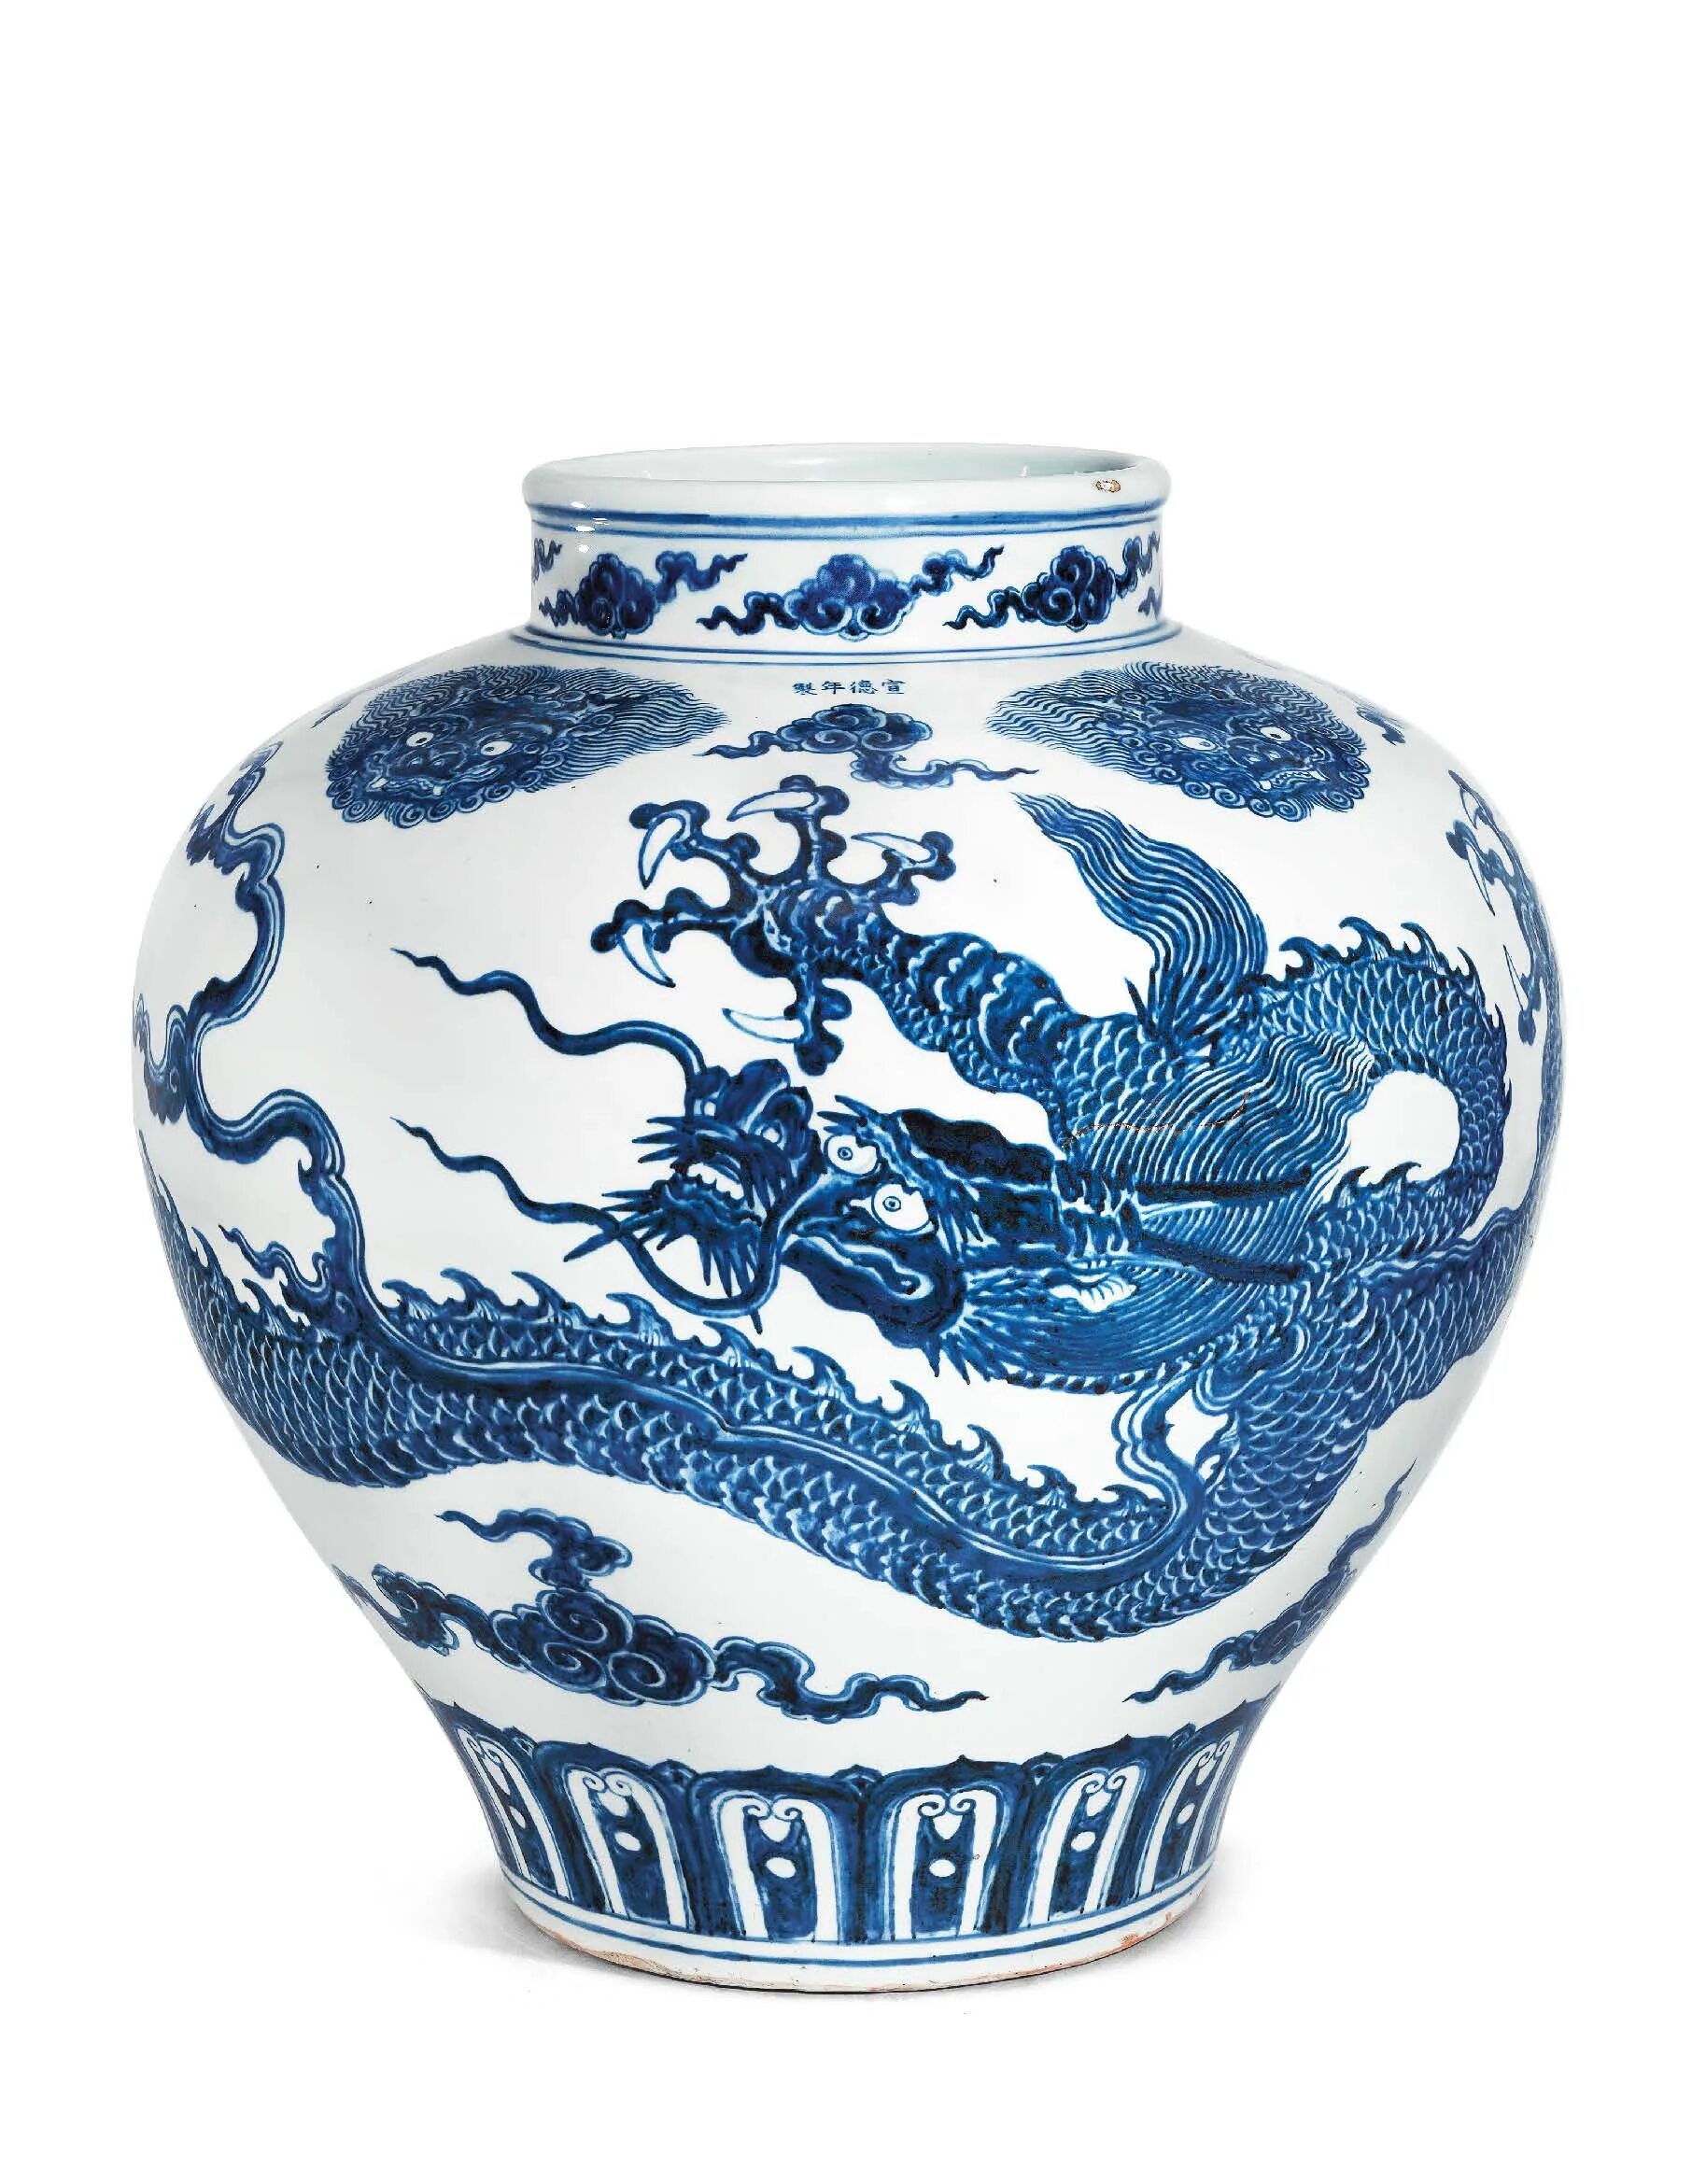 Будет китайско синий. Дракон фарфор Китай Династия мин. Китайские синие вазы. Китайская ваза синяя. Японские вазы с драконами.